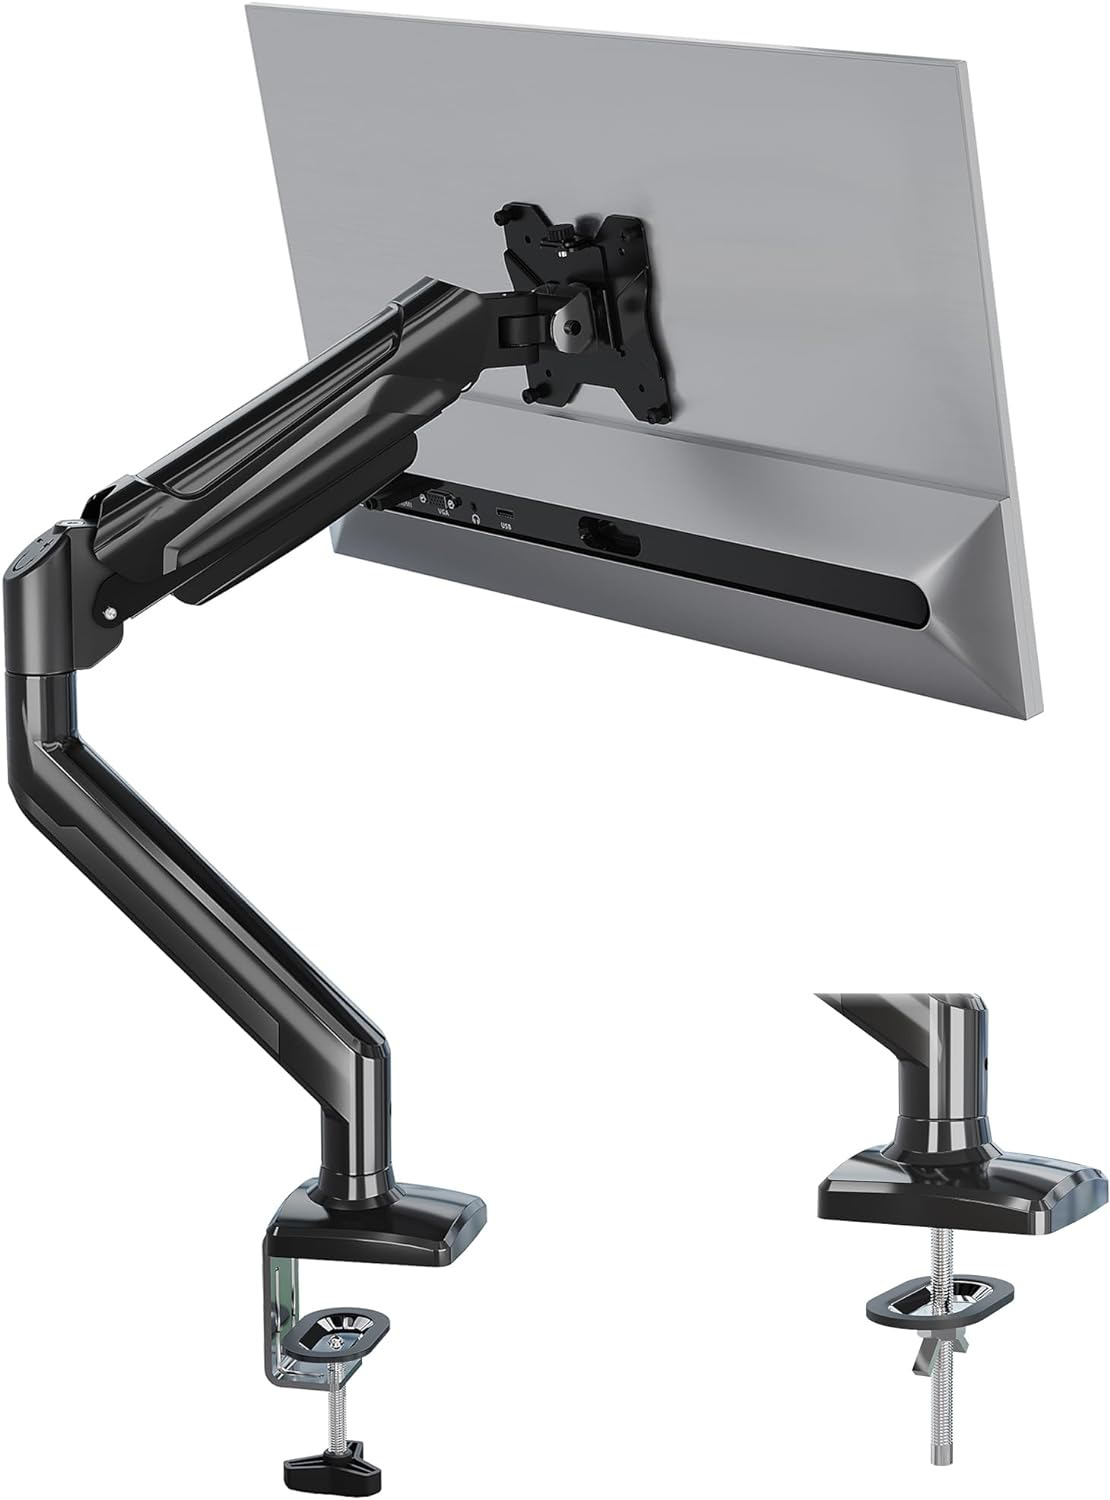 BONTEC Single Arm Monitor Desk Mount for 13 to 34 Inch Screen, Tilt, Swivel, Gas